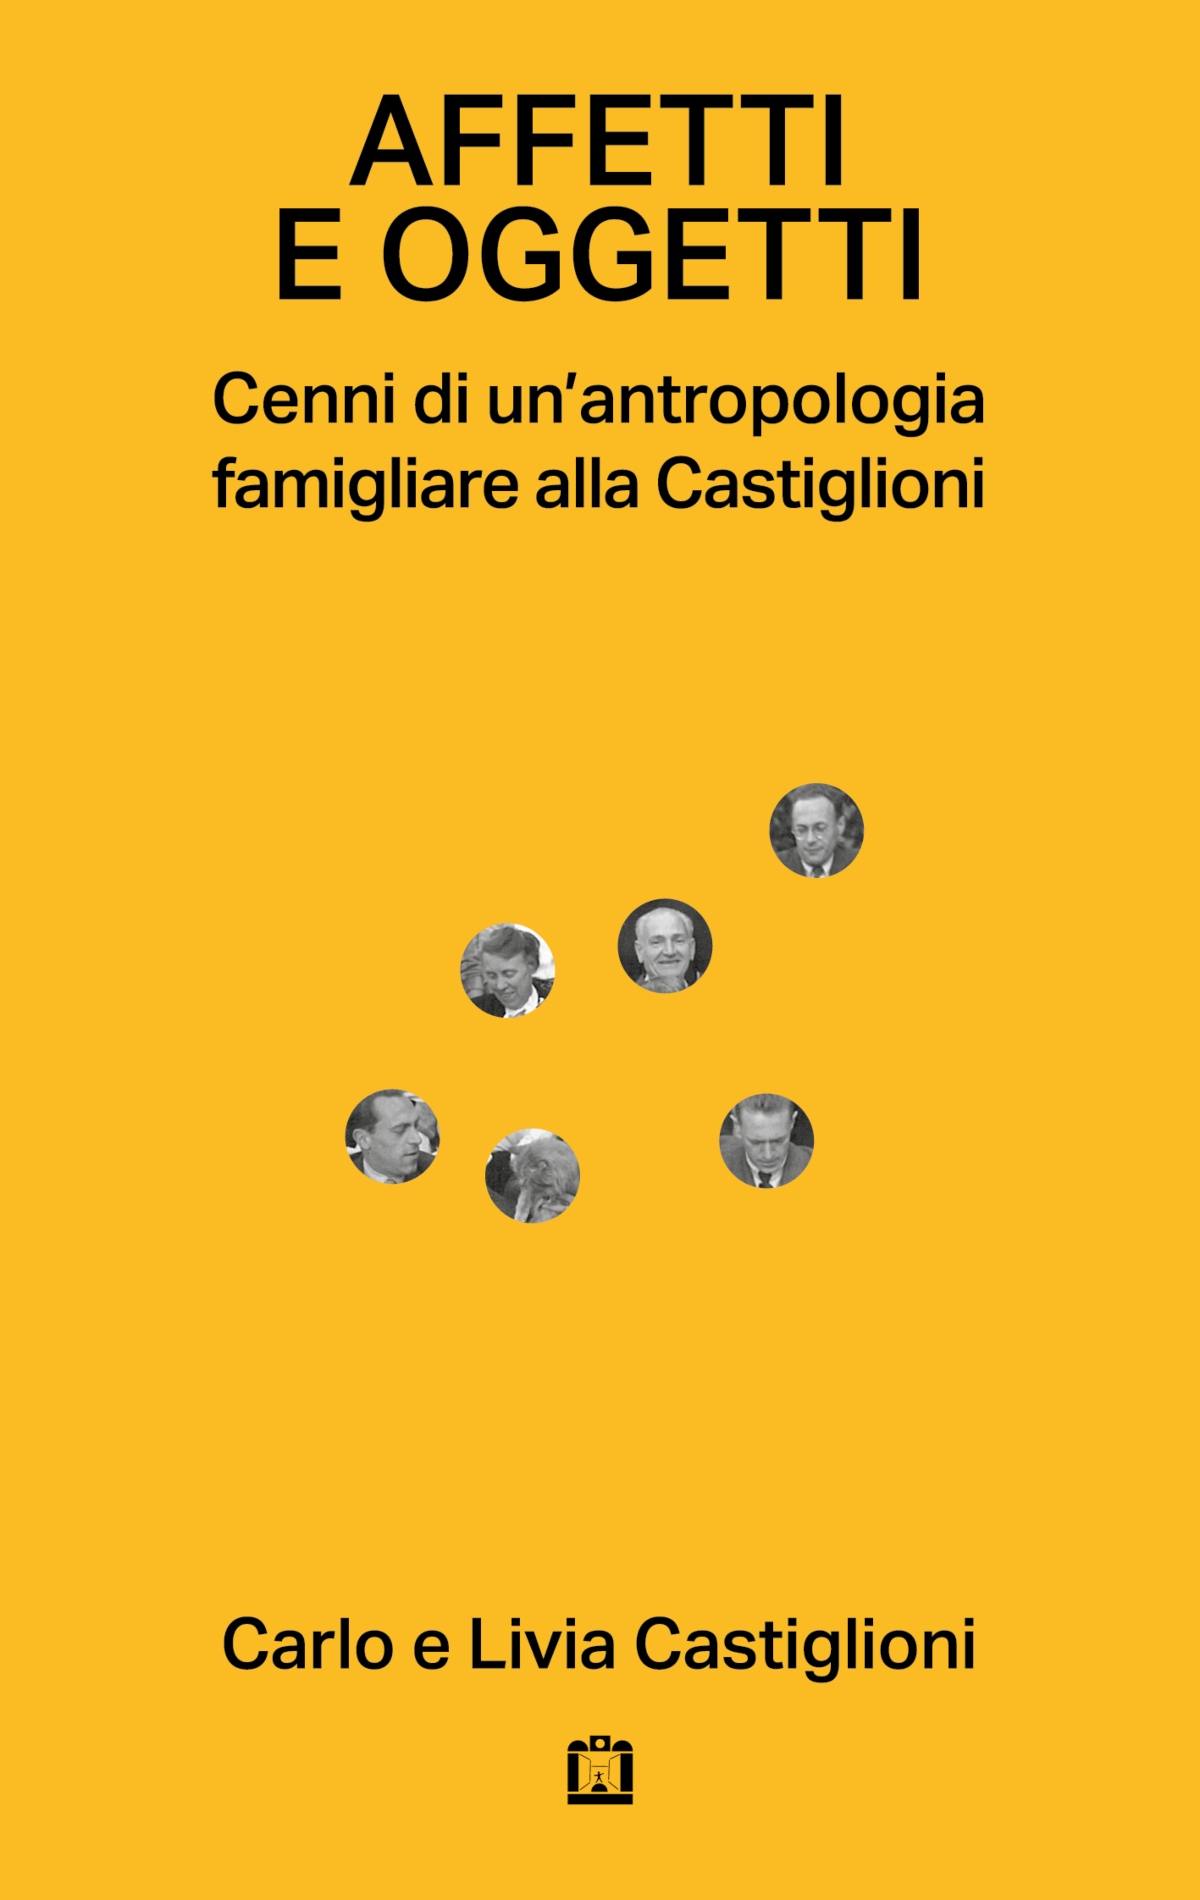 Copertina del libro "Affetti e oggetti. Cenni di un'antropologia famigliare alla Castiglioni" - Courtesy Corraini Edizioni 